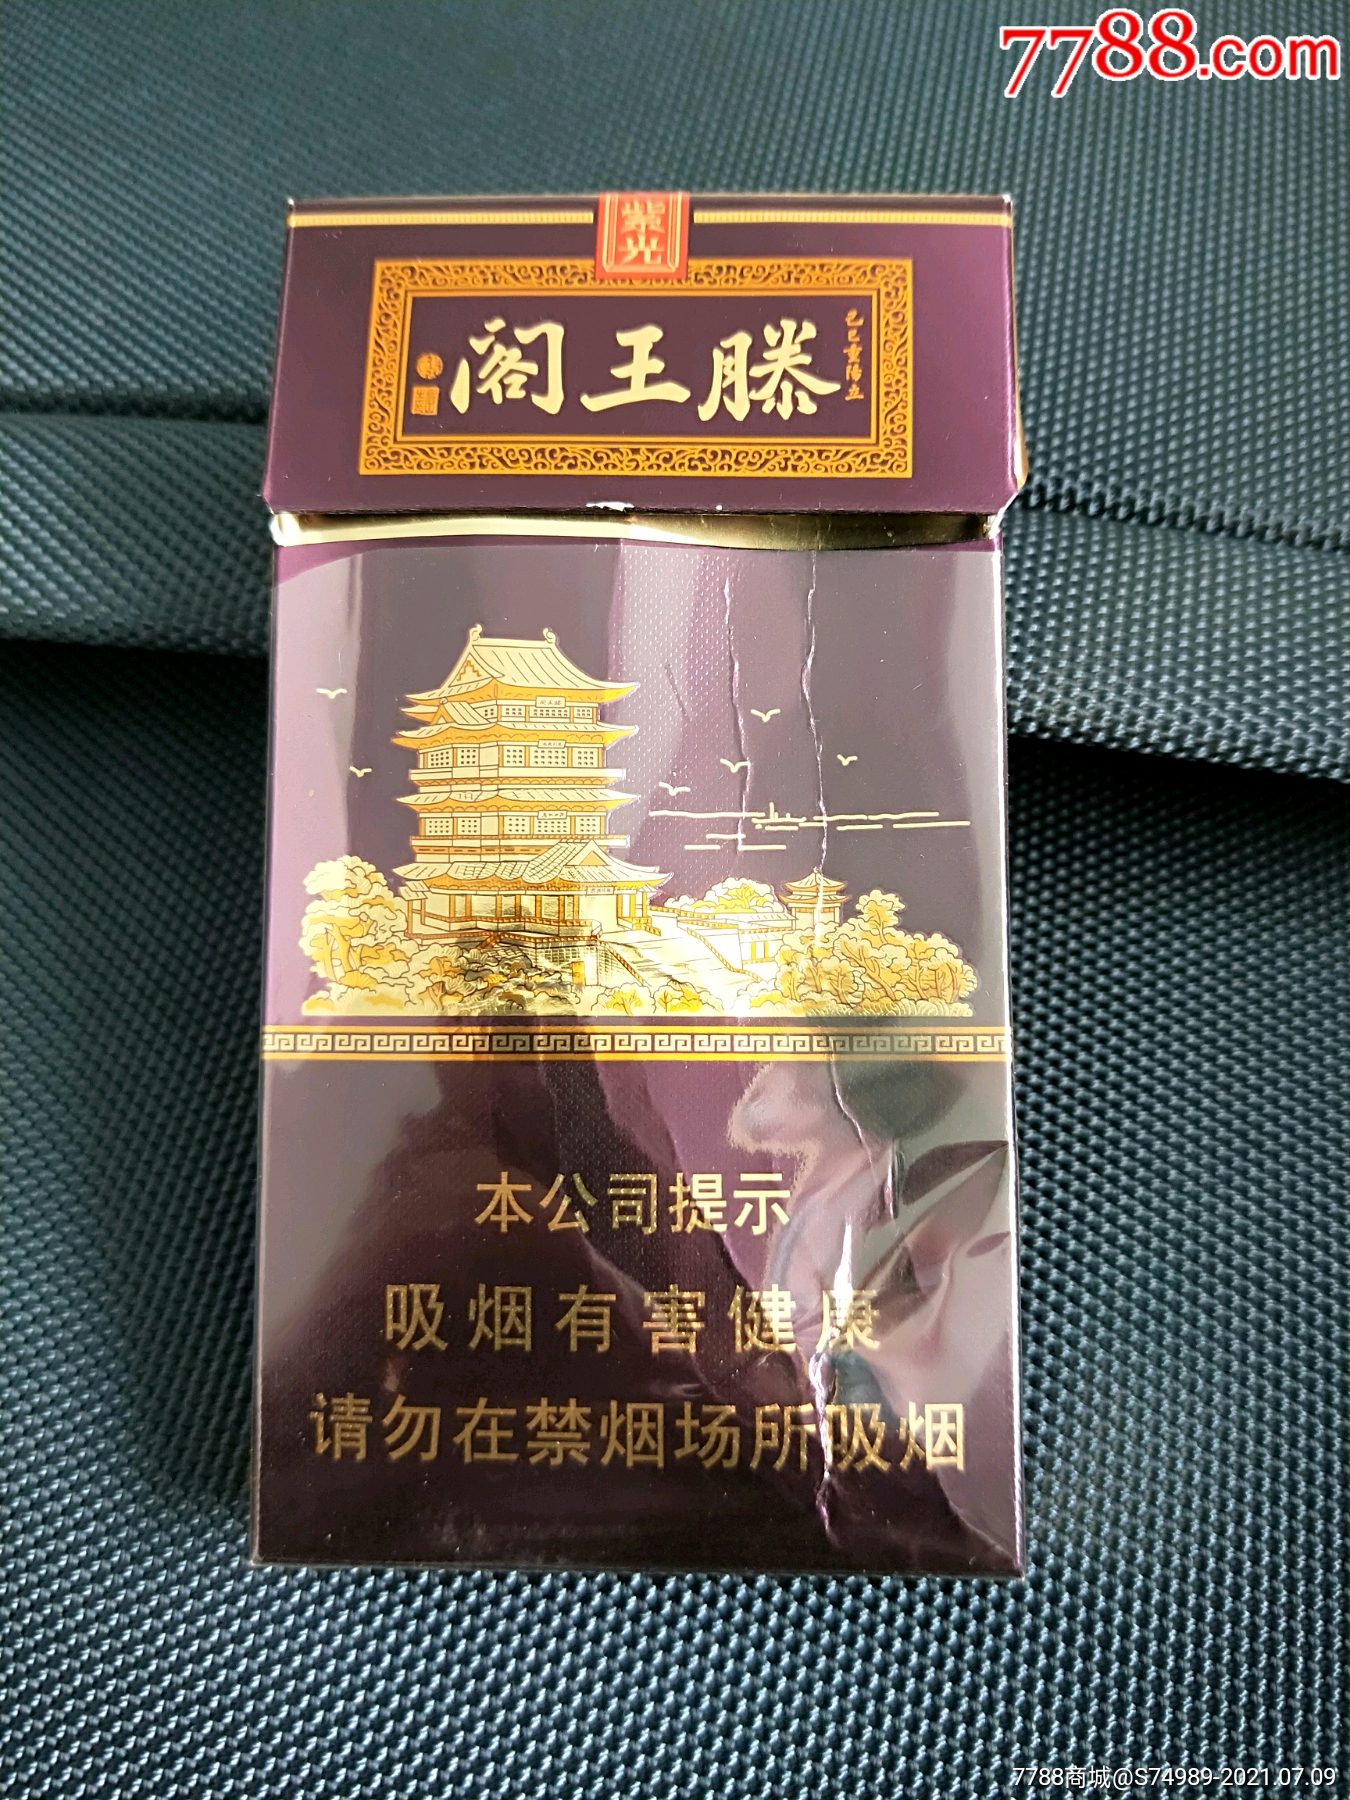 滕王阁香烟紫光价格图片